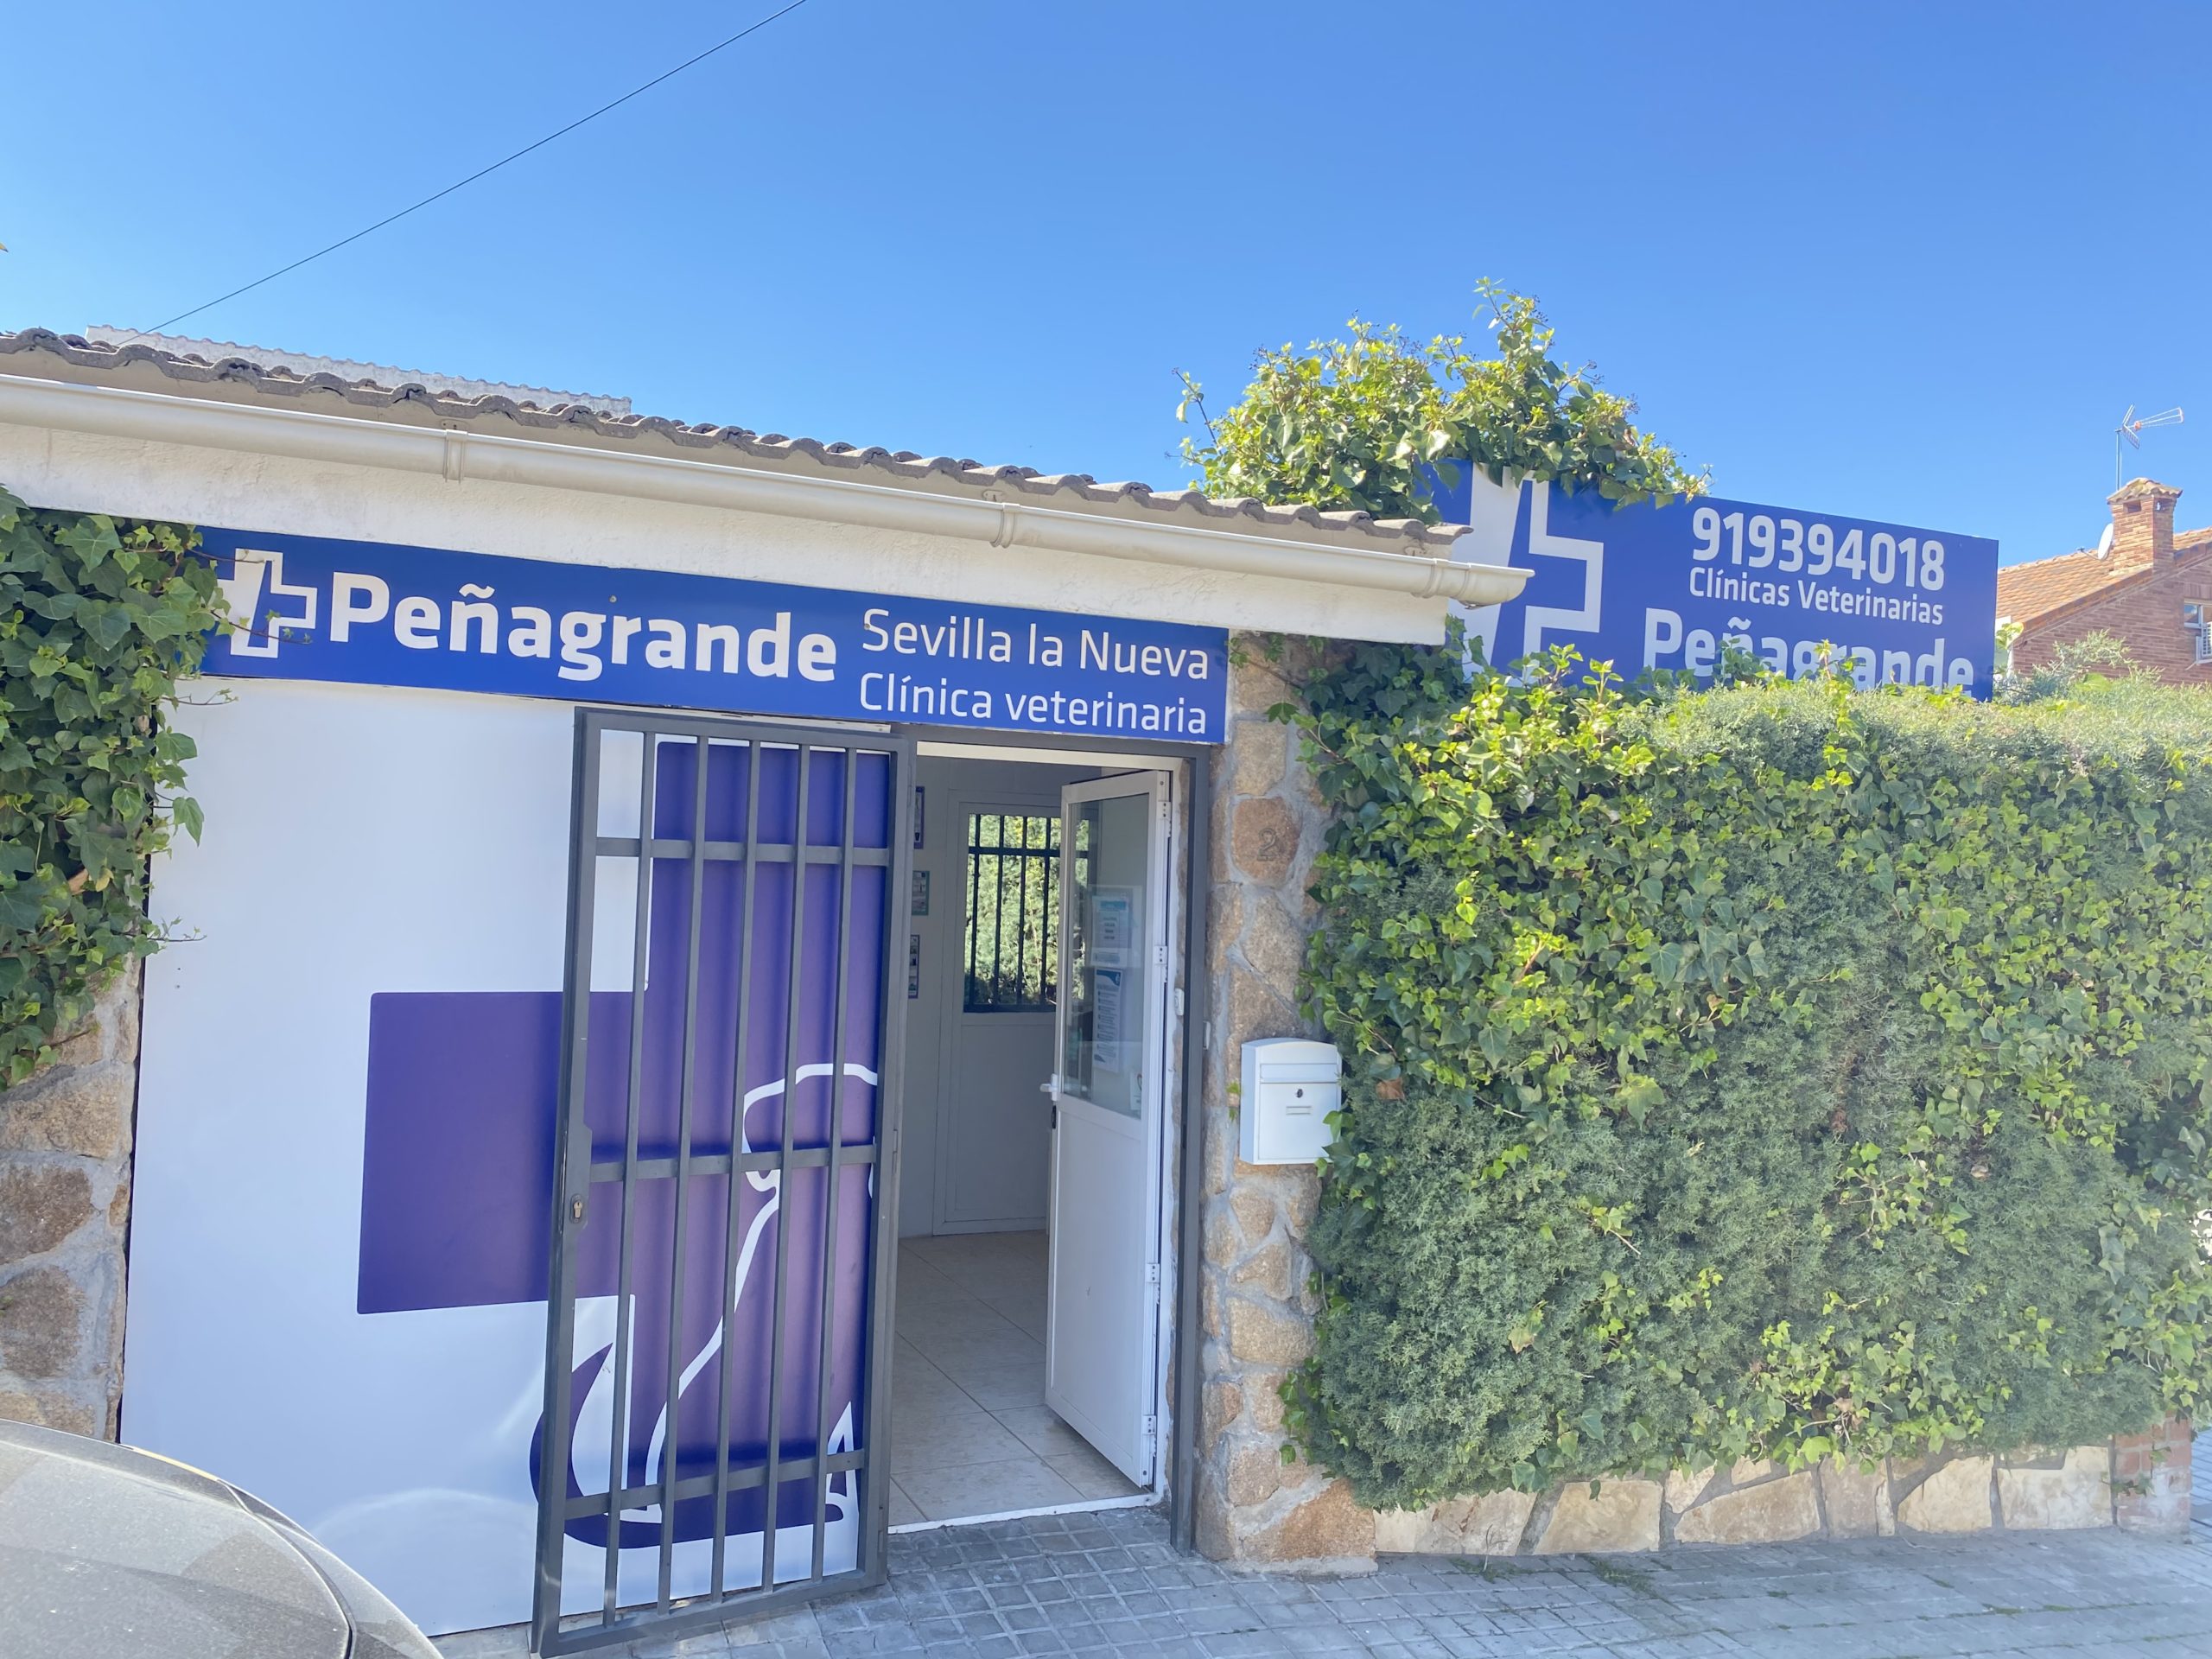 Acceso a la clínica veterinaria Peñagrande Sevilla la Nueva